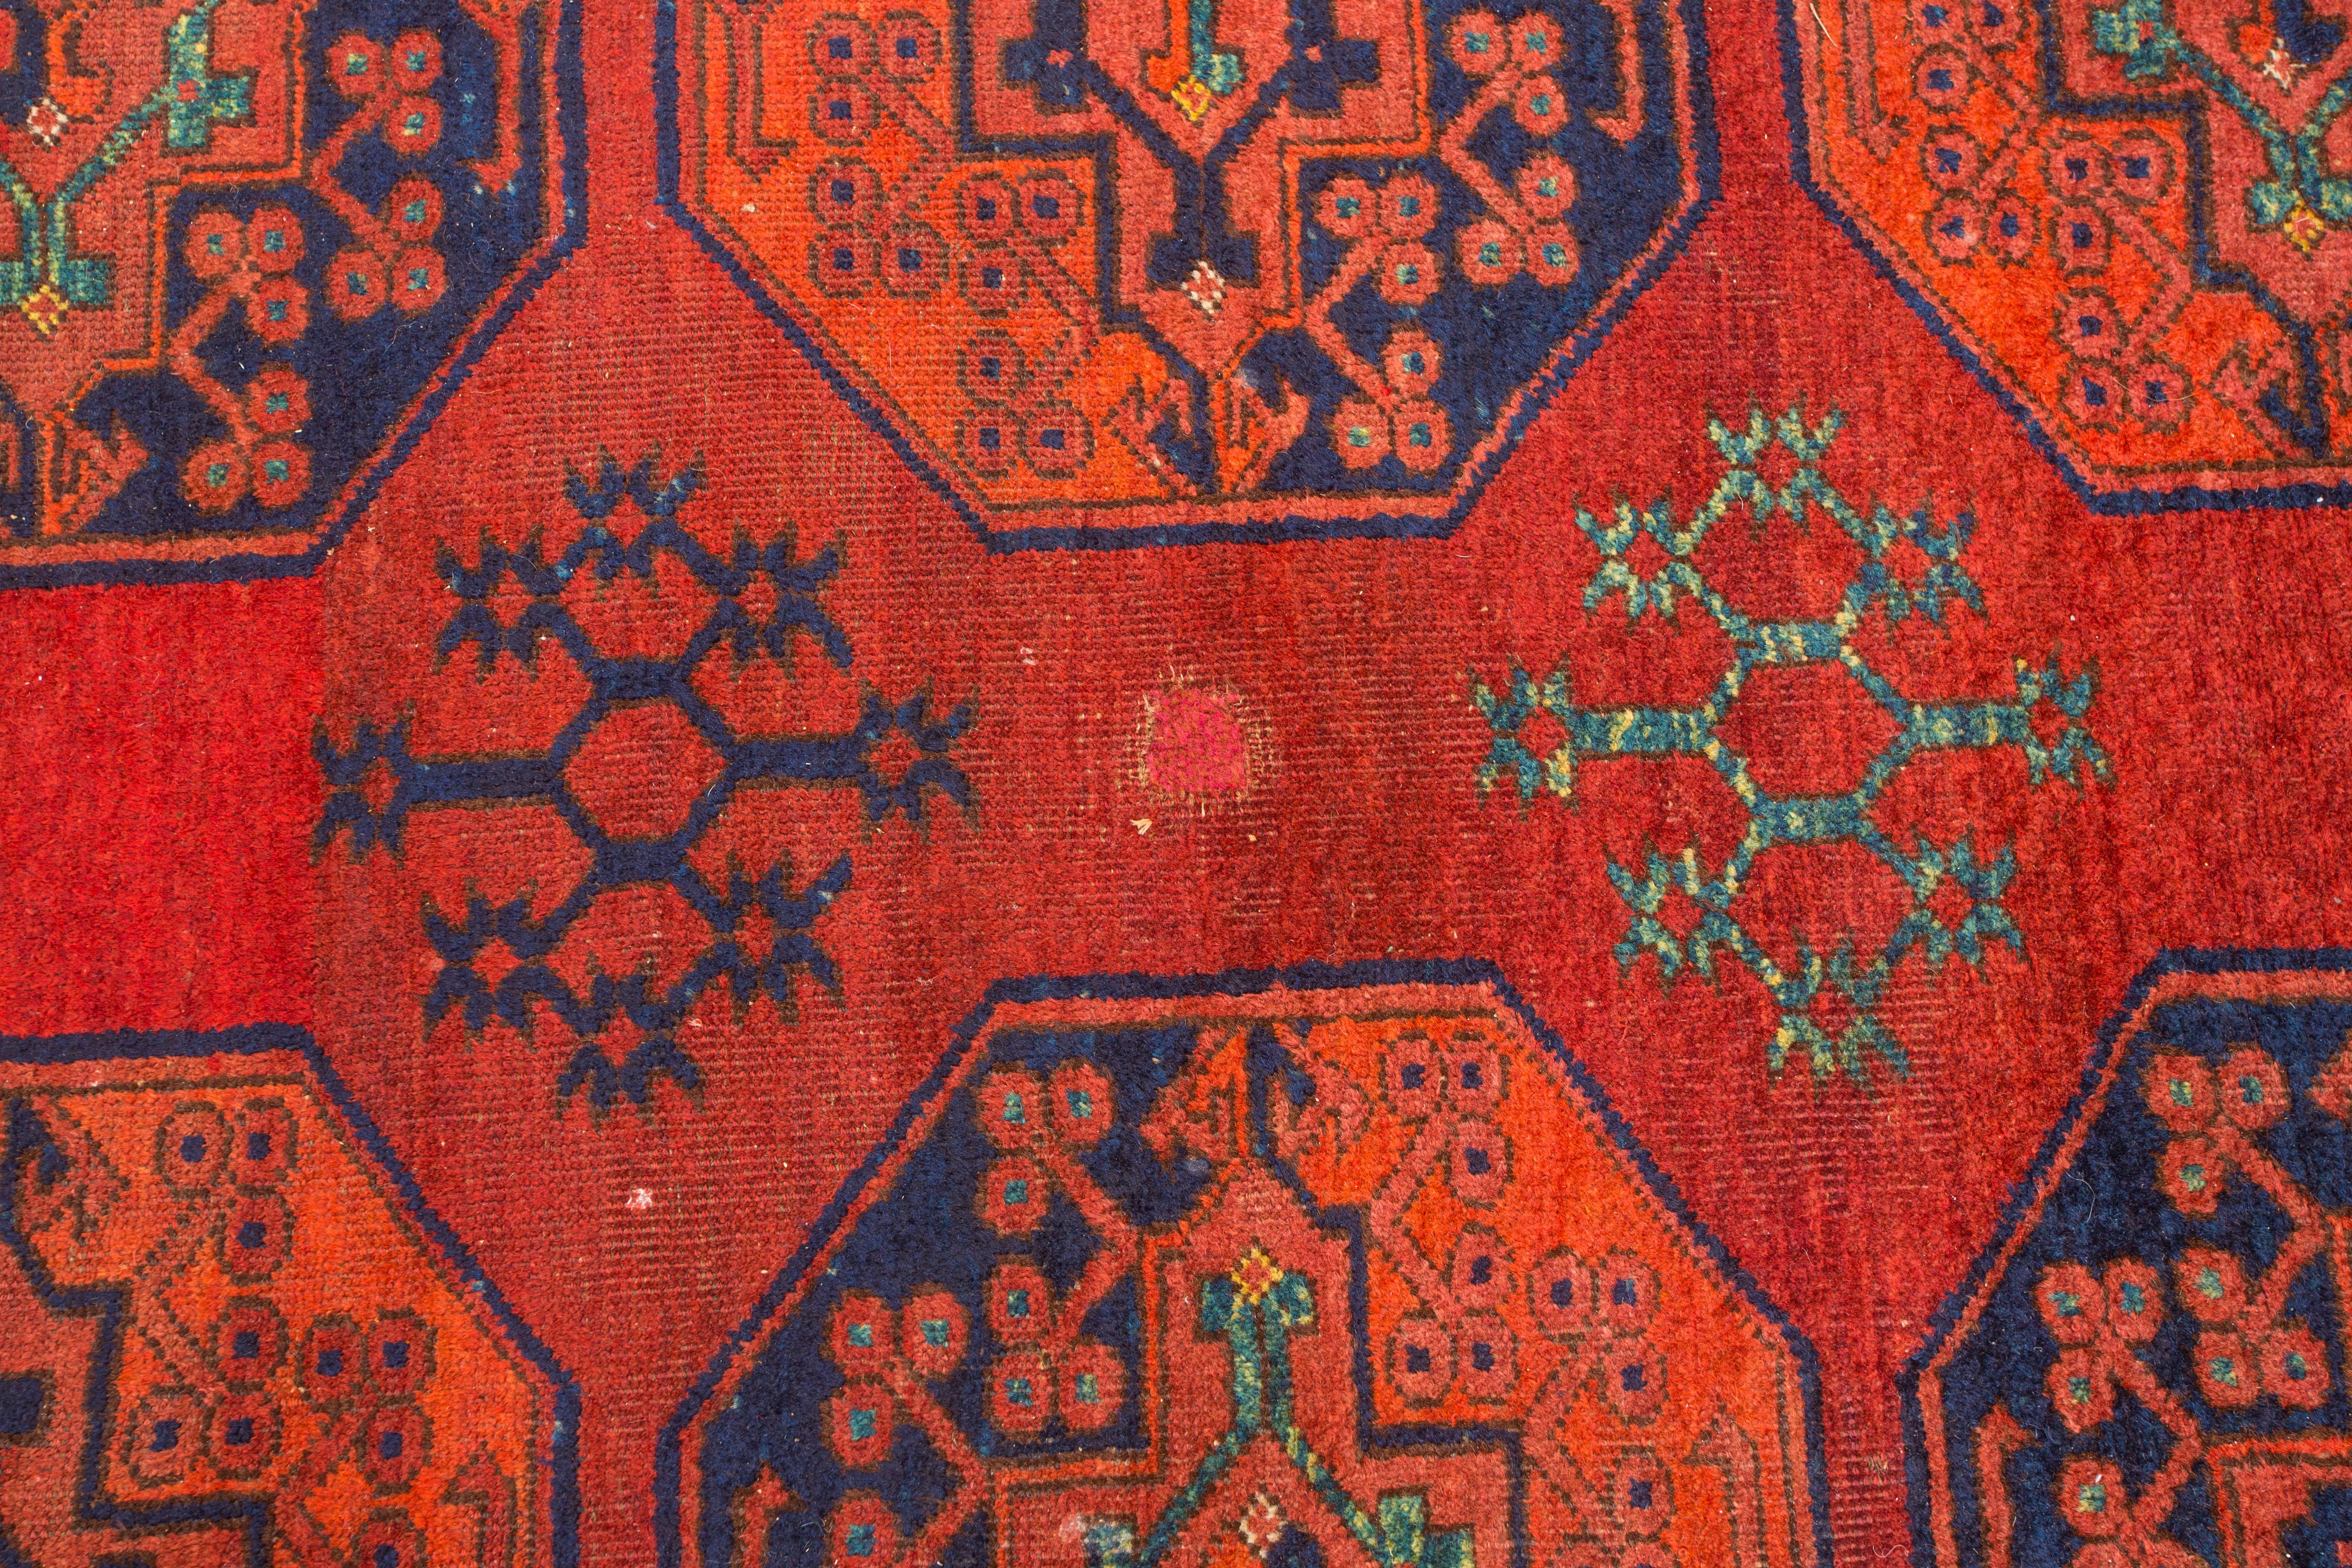 Turkomen-Teppiche dieser Größe und Qualität waren stets begehrt, aber sehr schwer zu bekommen. Was das Alter betrifft, so scheint er für einen Häuptling oder Stammesführer gewebt worden zu sein, da er eine große Jurte benötigt, um ihn